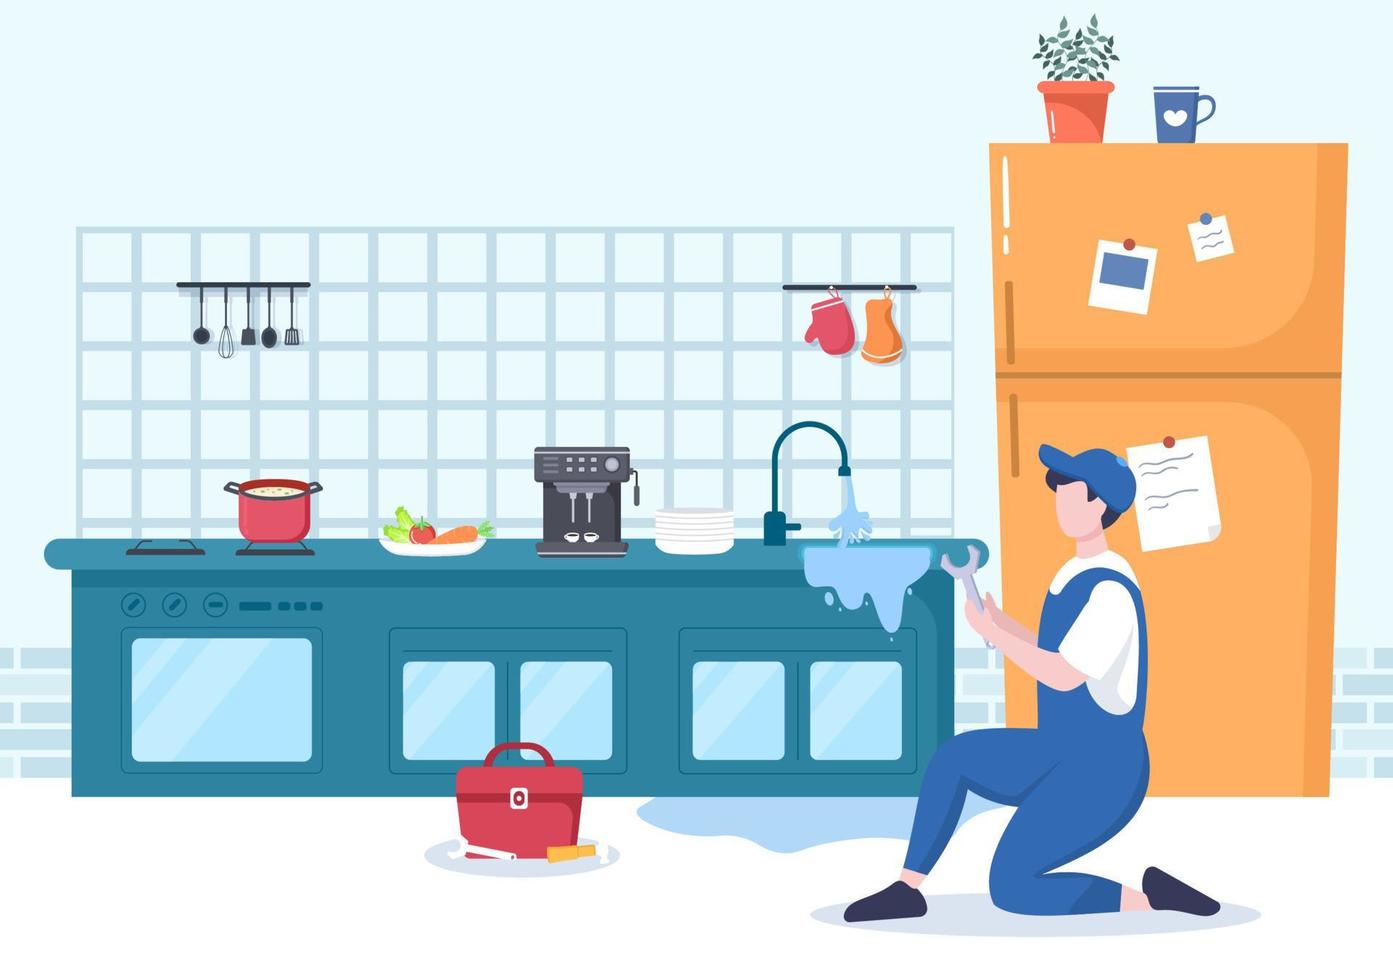 servizio idraulico con la riparazione degli operai dell'idraulico, la riparazione della casa di manutenzione e la pulizia dell'attrezzatura del bagno nell'illustrazione piana del fondo vettore